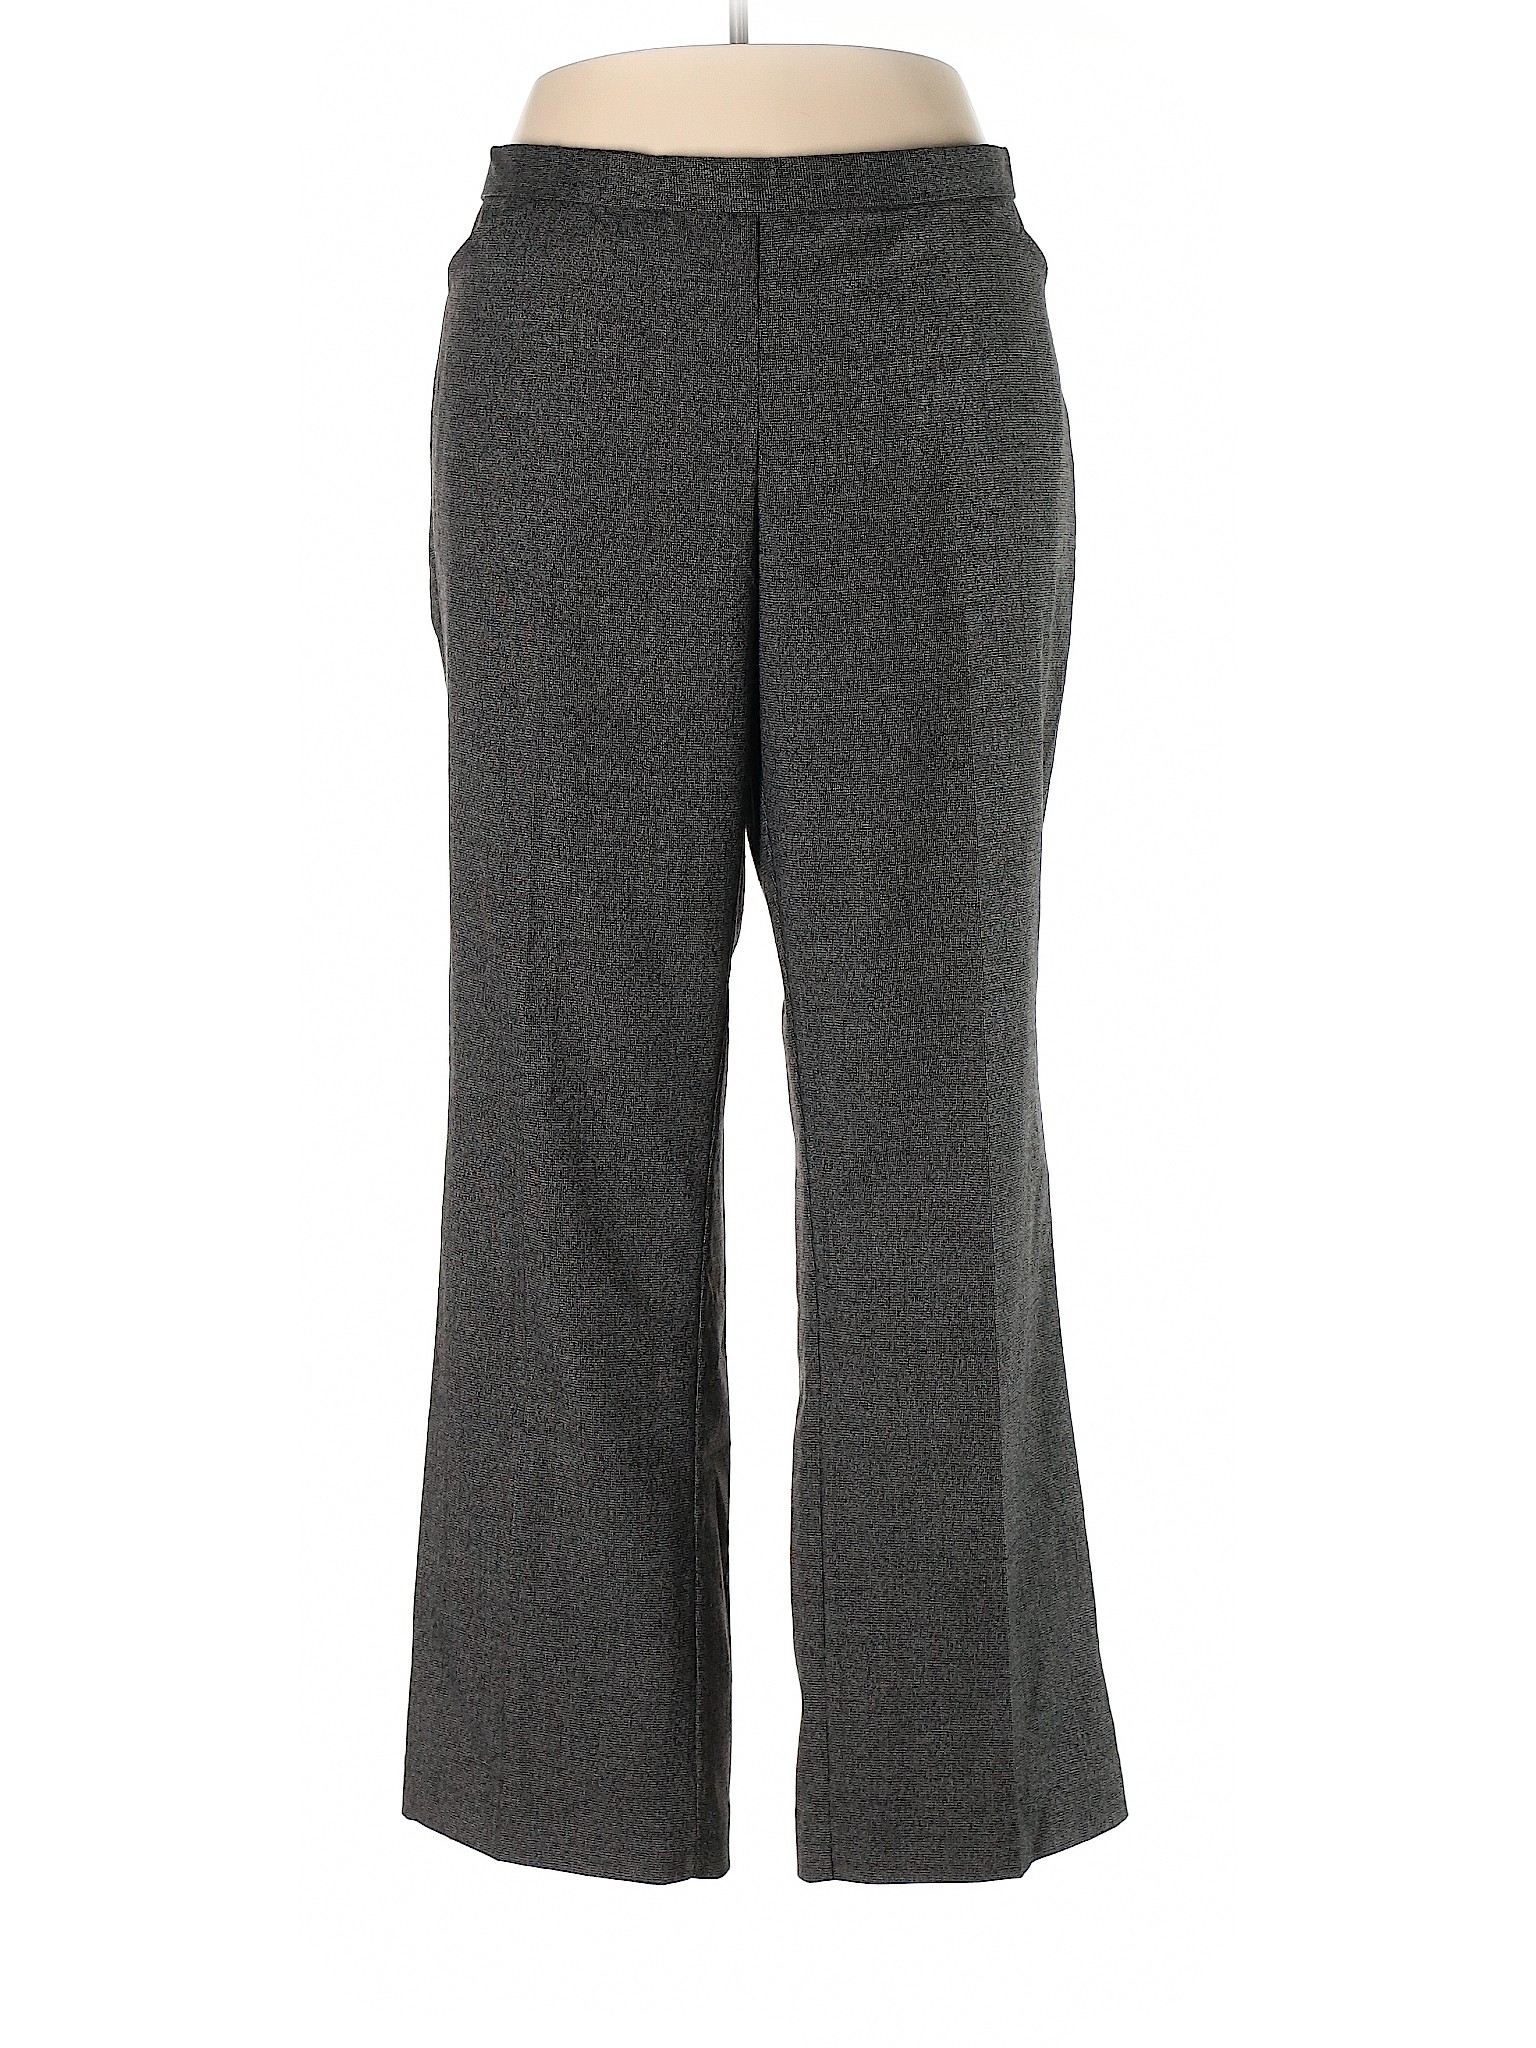 Cj Banks Women Gray Dress Pants 16 | eBay